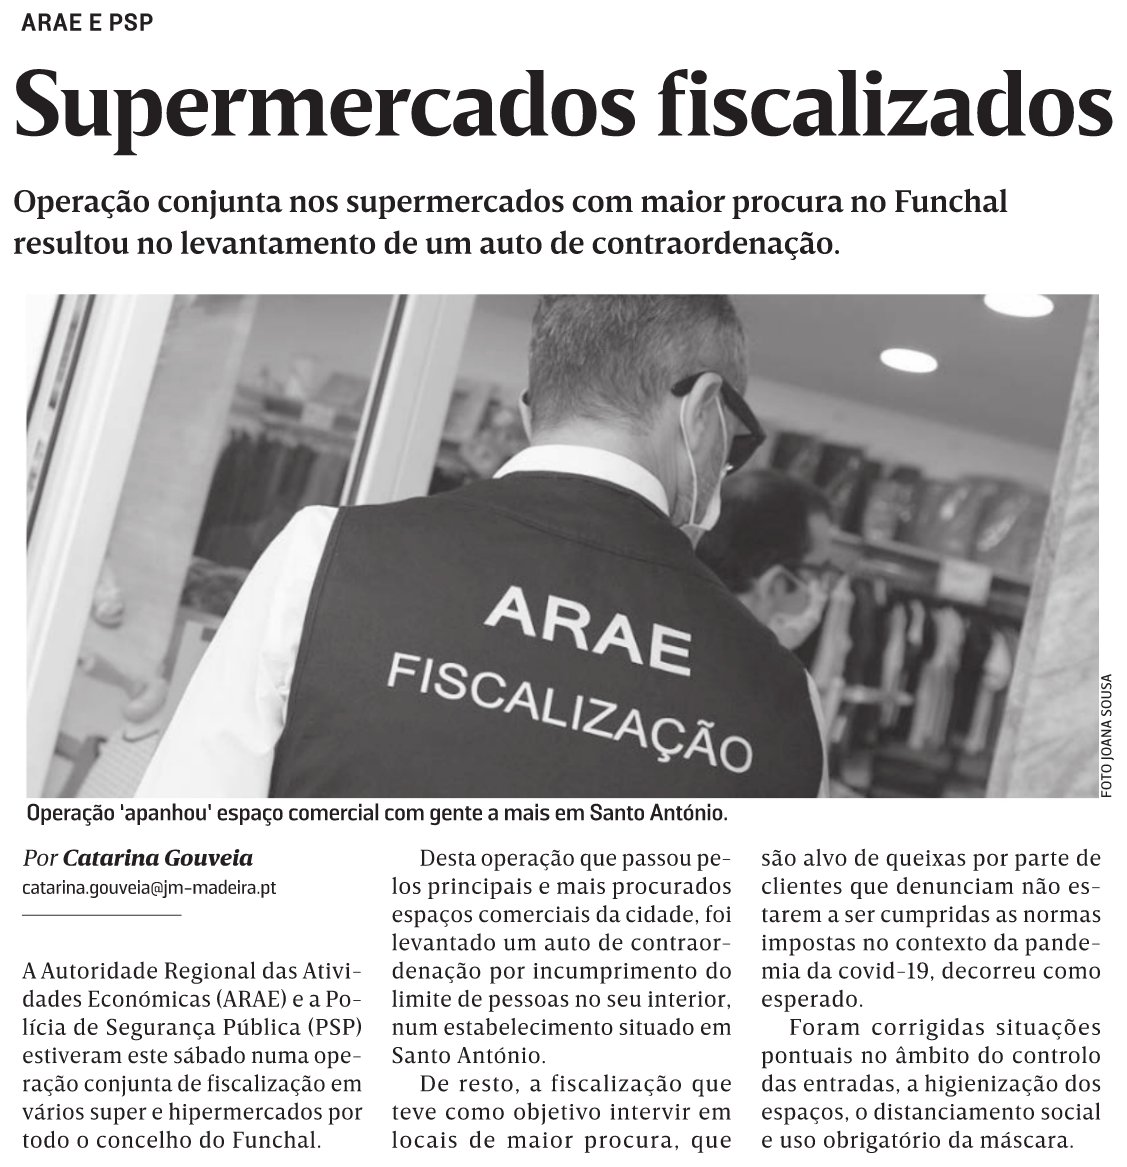 in JM-Madeira, edição de 13/12/2020 